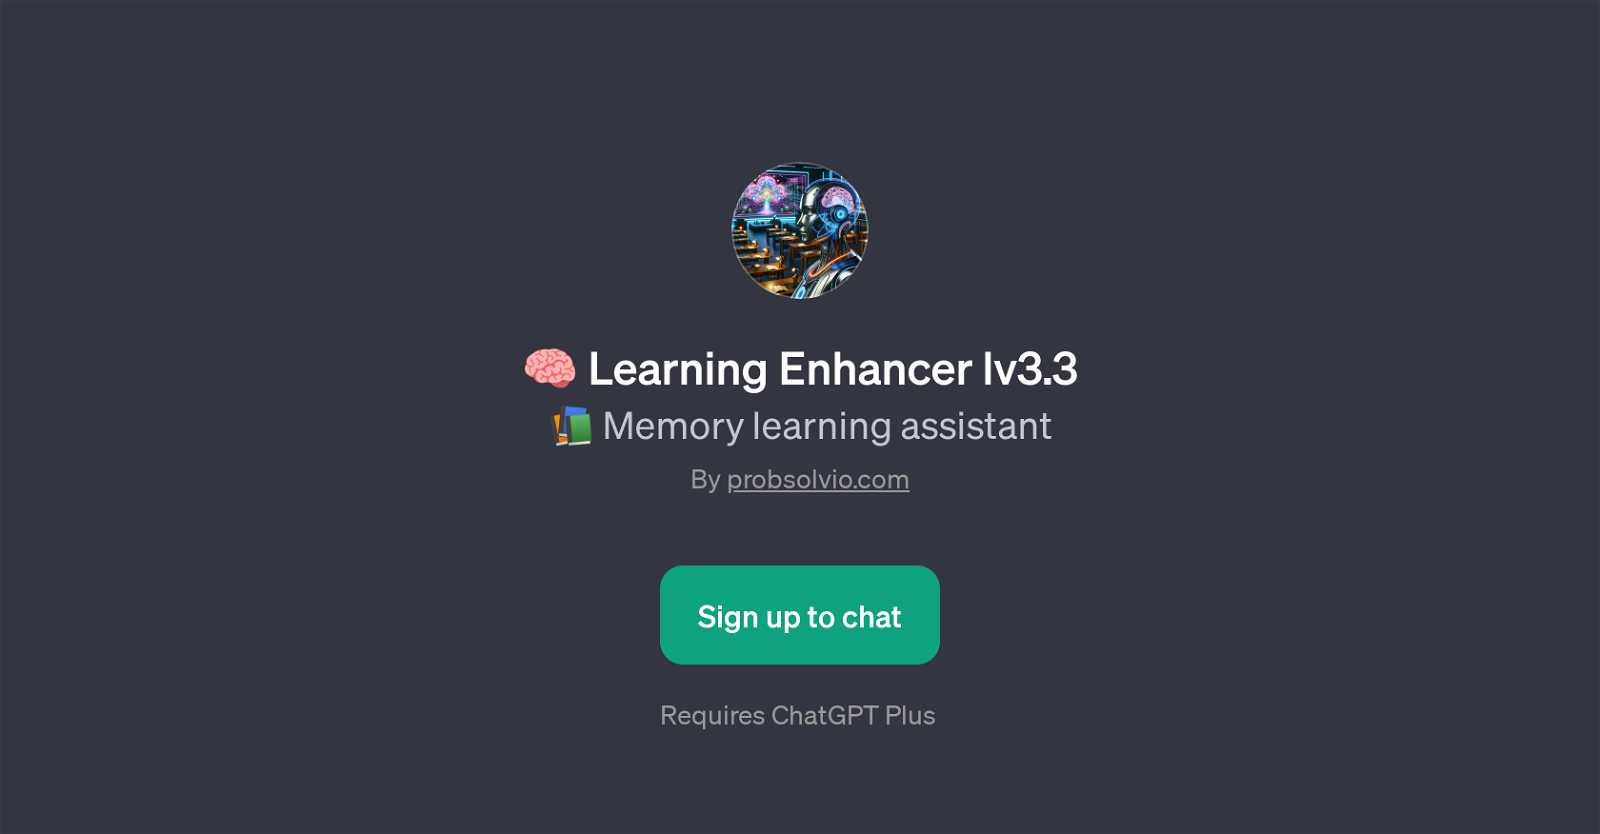 Learning Enhancer lv3.3 website